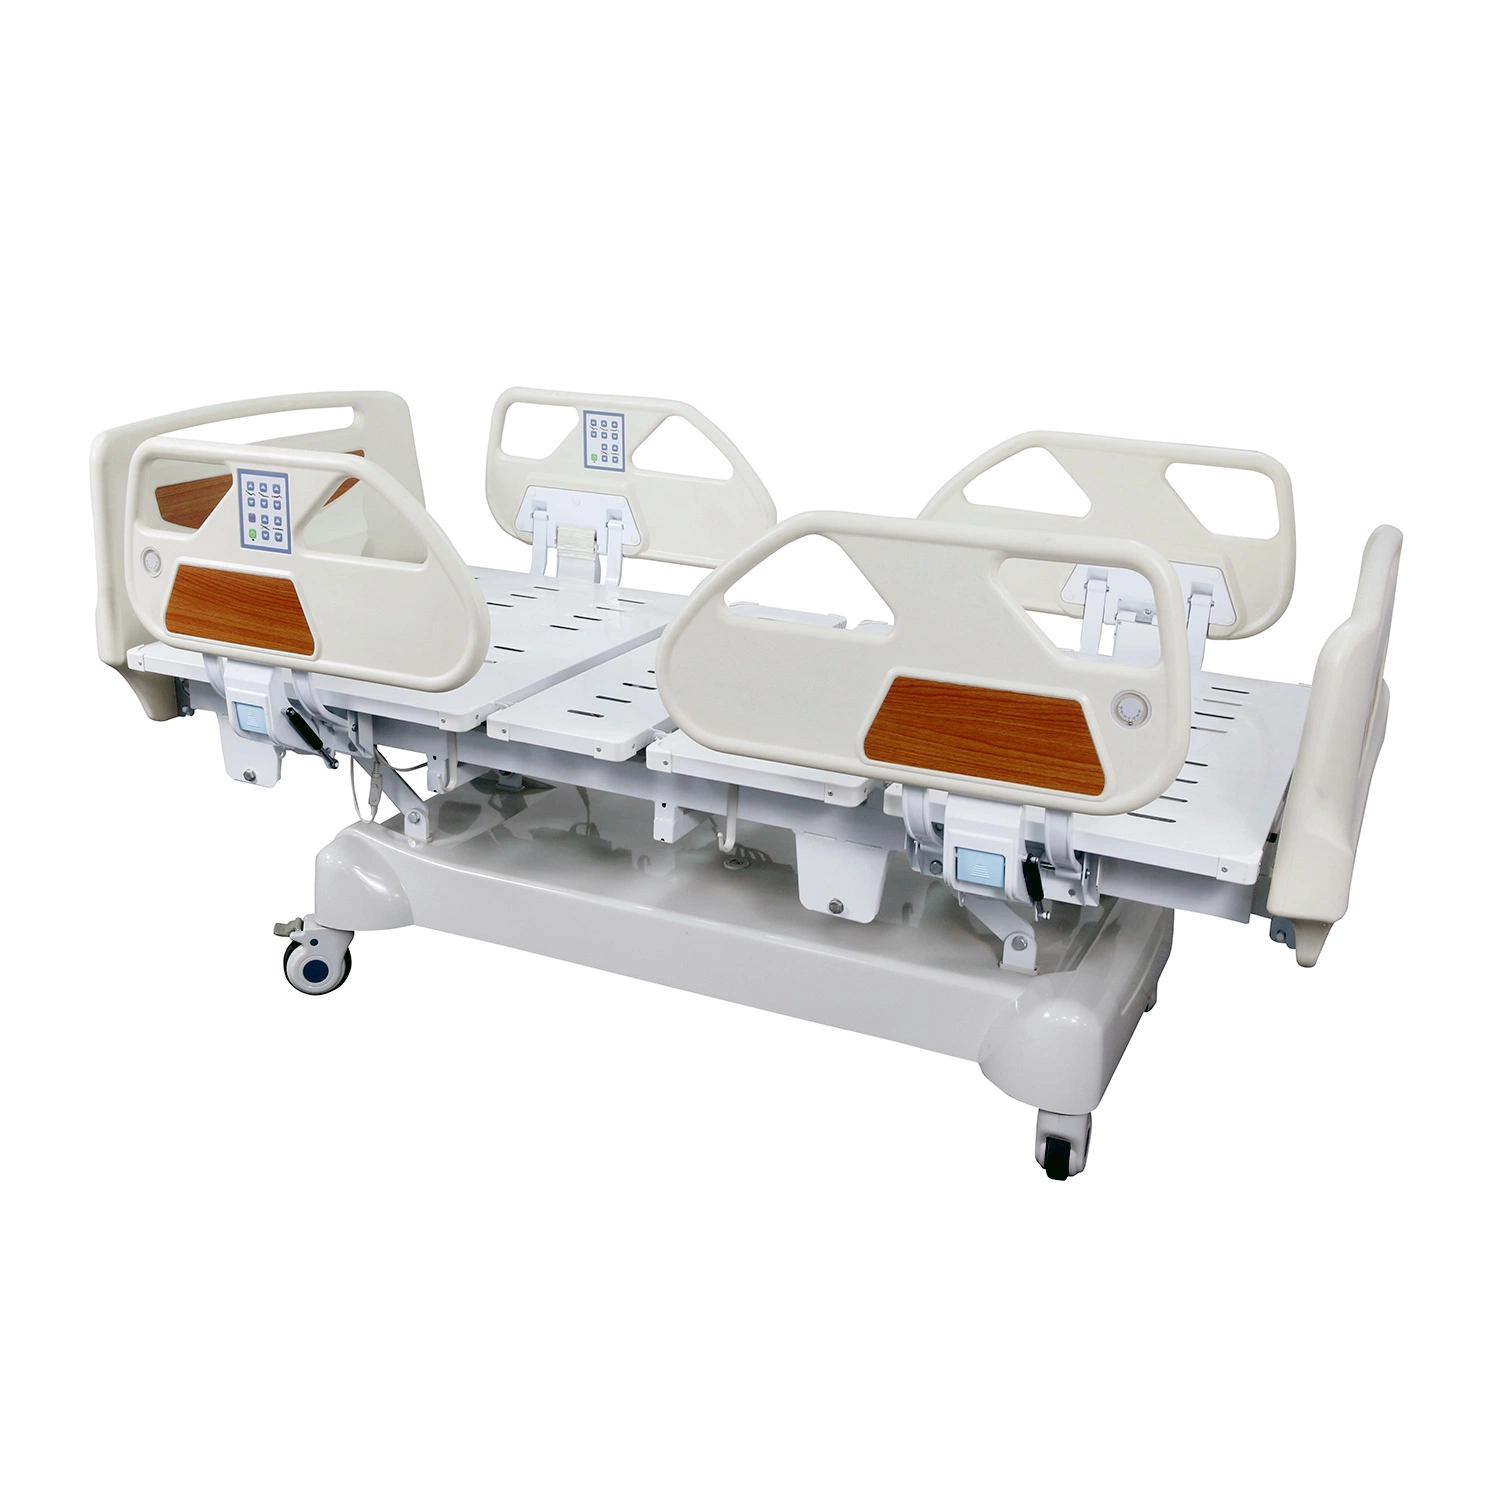 الأثاث التجاري سرير مستشفى ICU المصنع المعدات الطبية